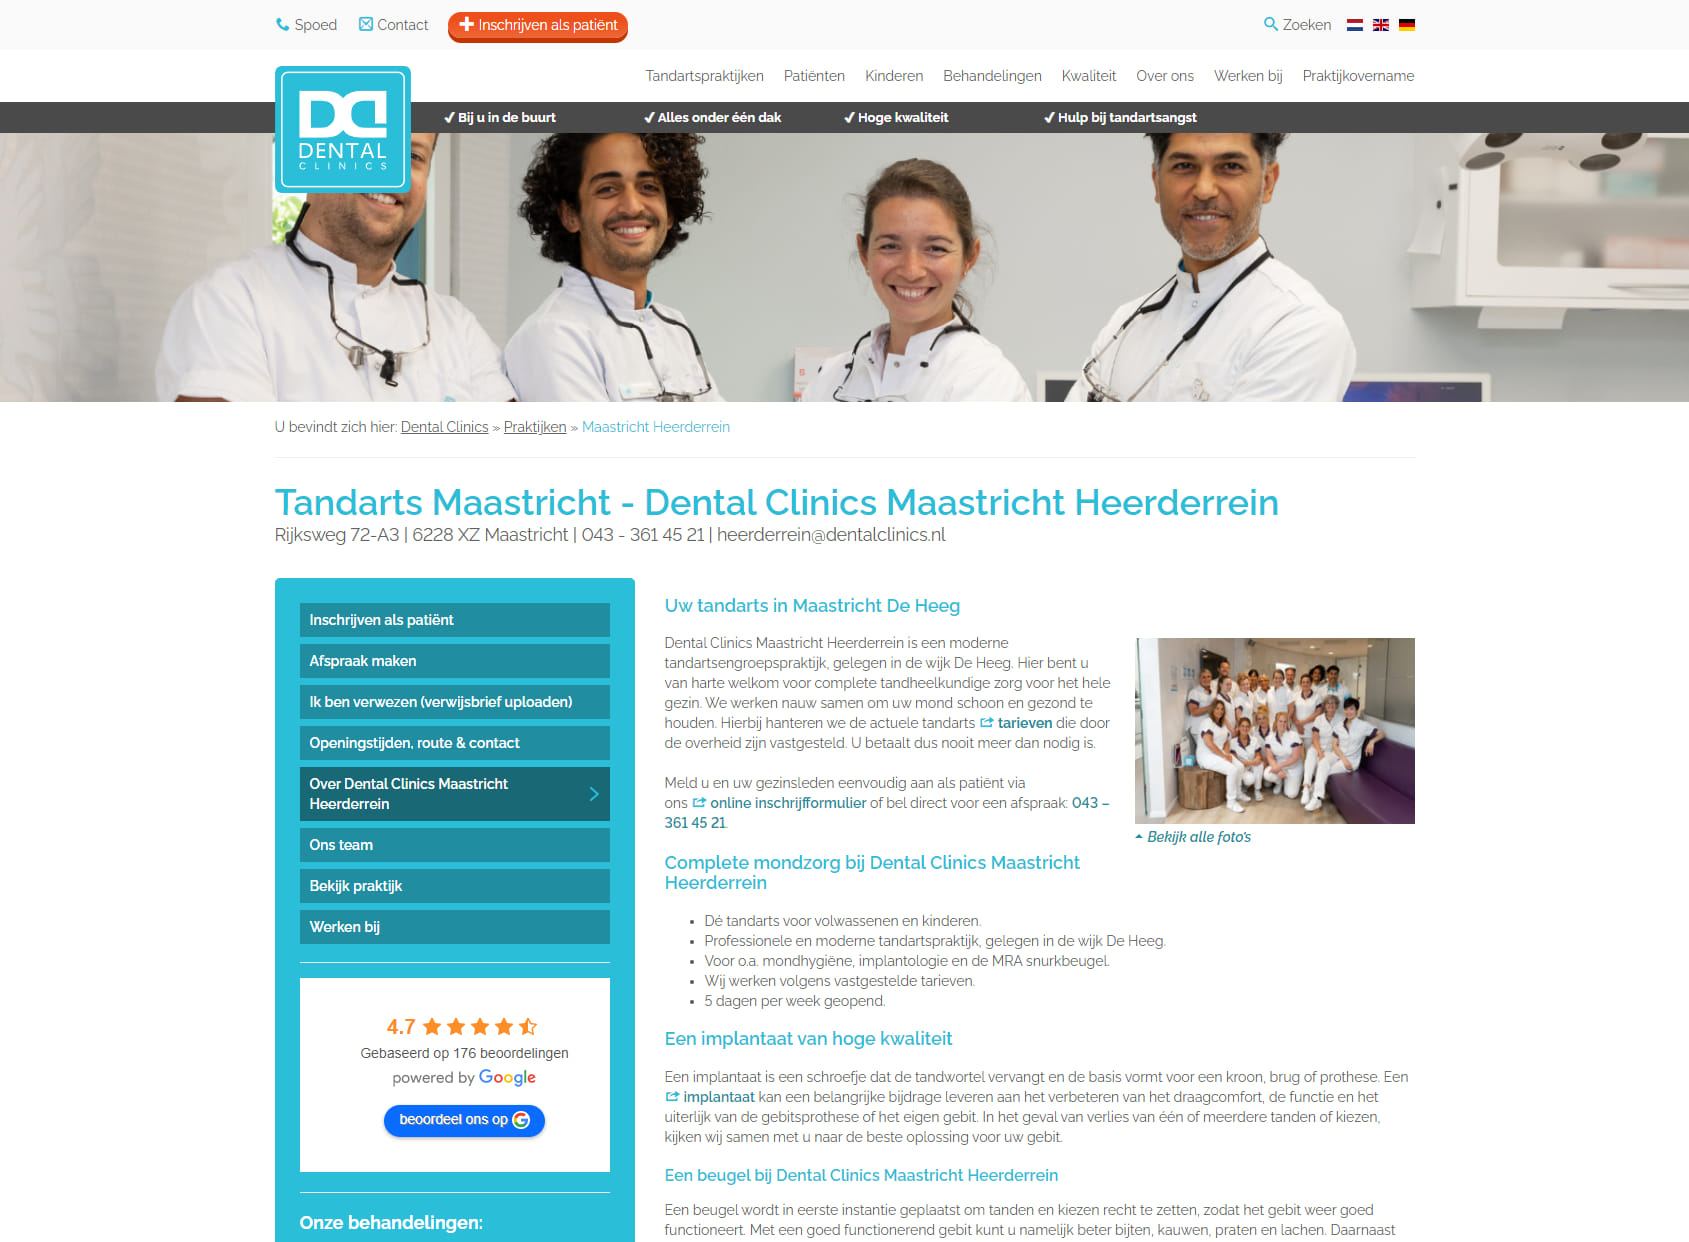 Dental Clinics Maastricht Heerderrein